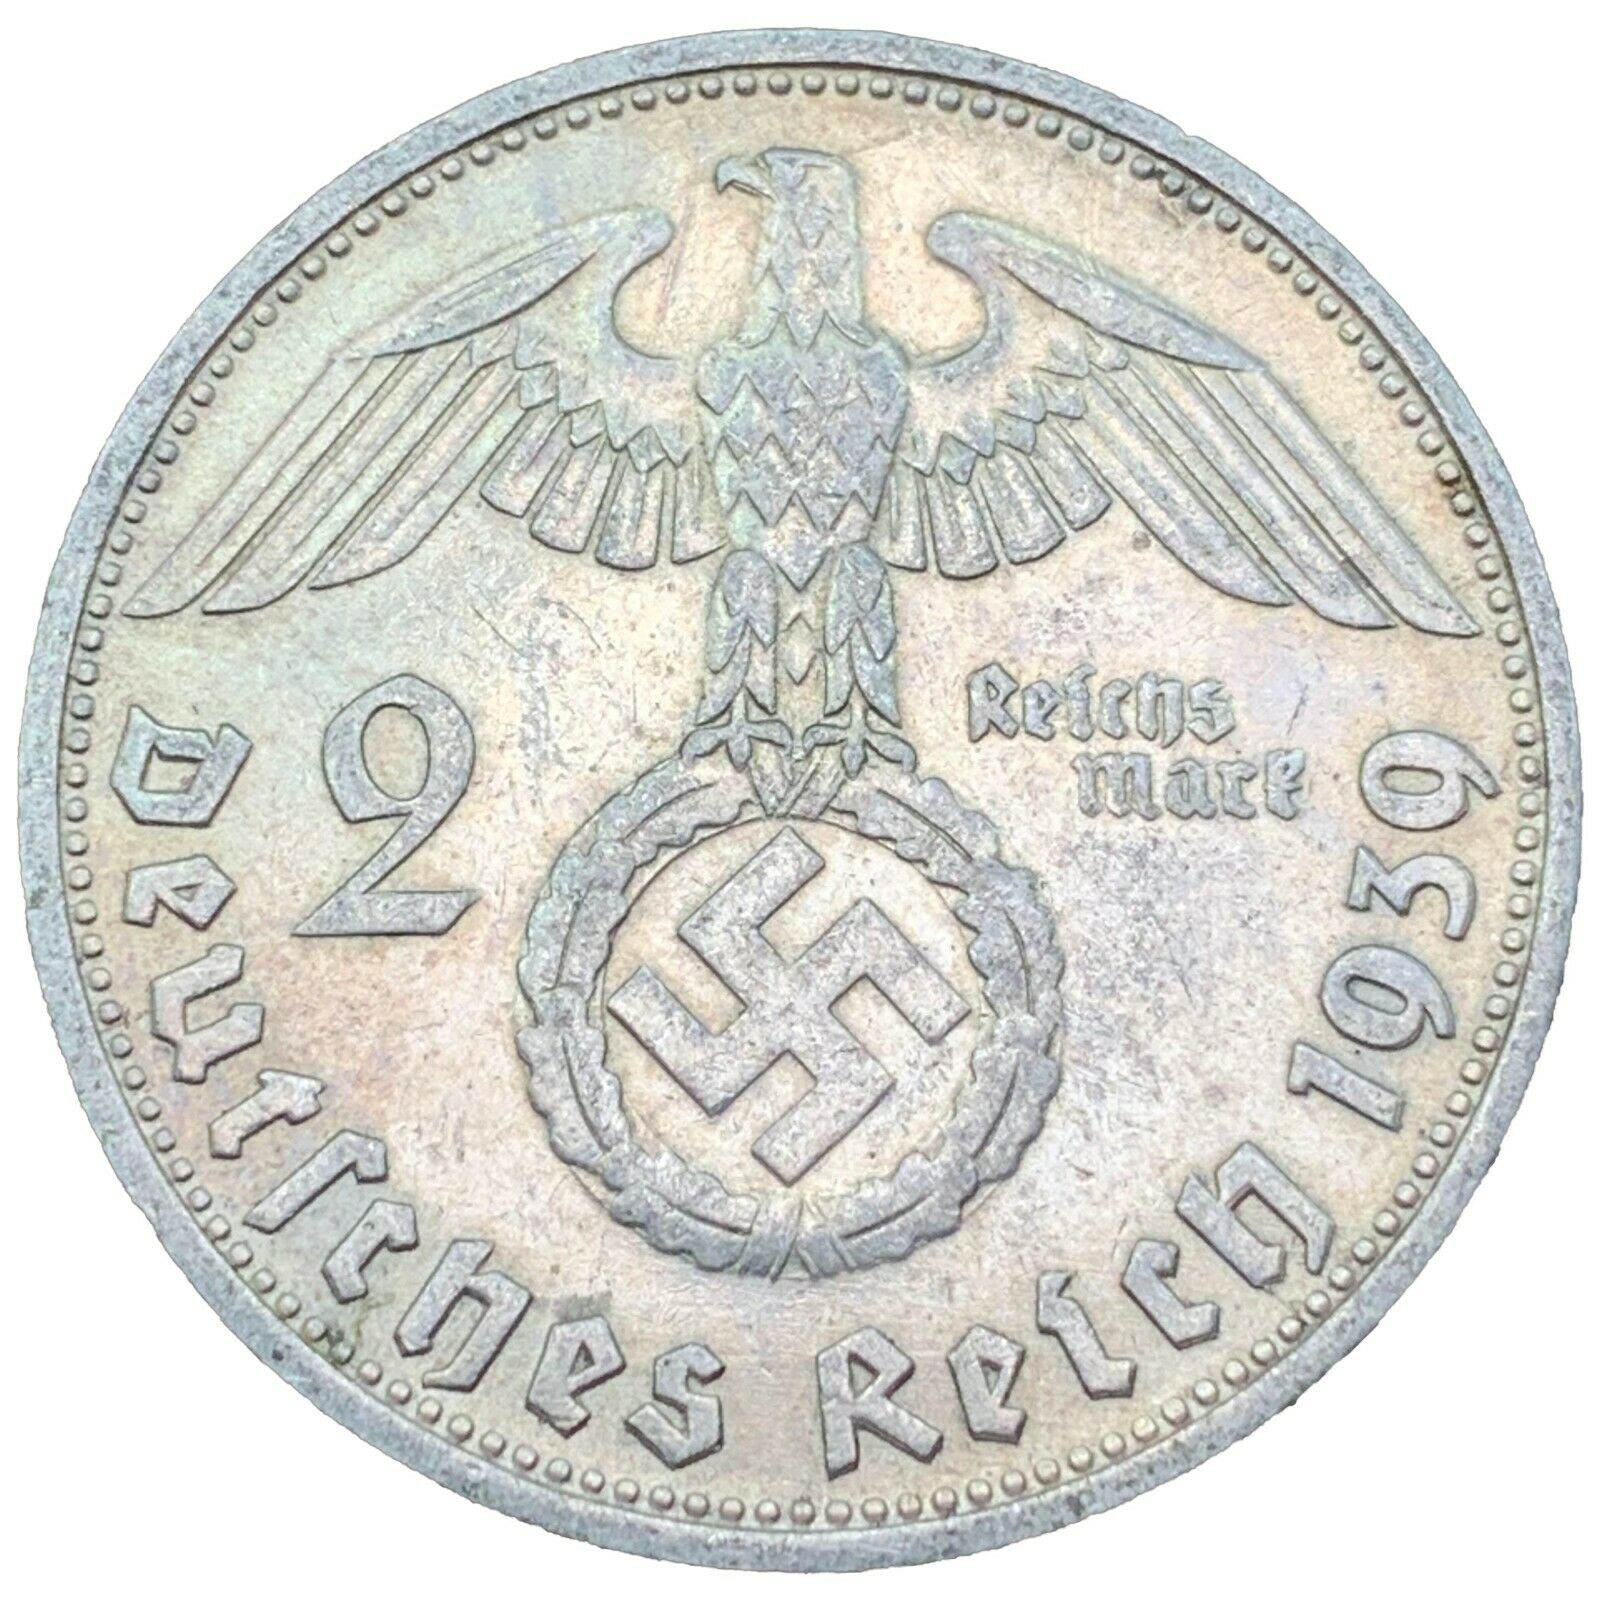 Rare Third Reich Ww2 German 2 Reichsmark Hindenburg Silver Coin Buy 3 Get 1 Free